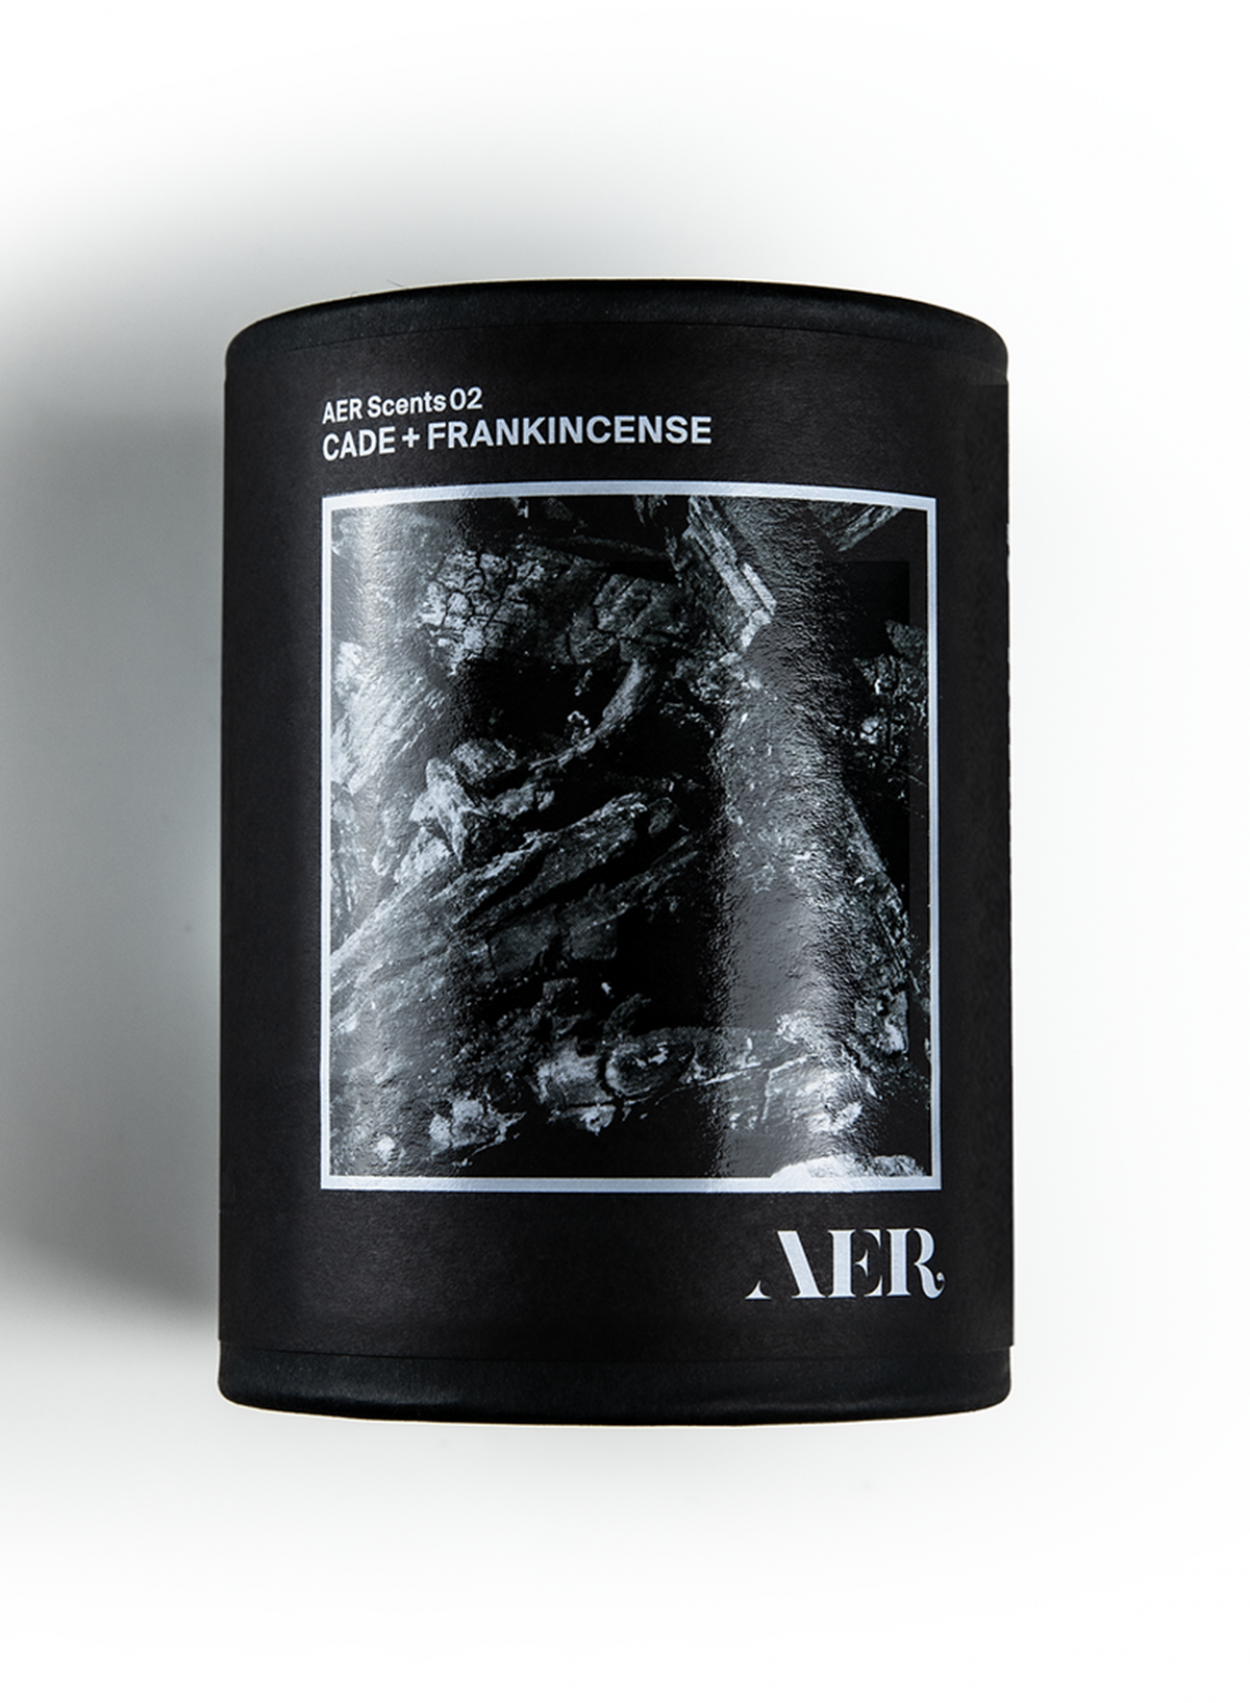 02, Cade + Frankincense - AER